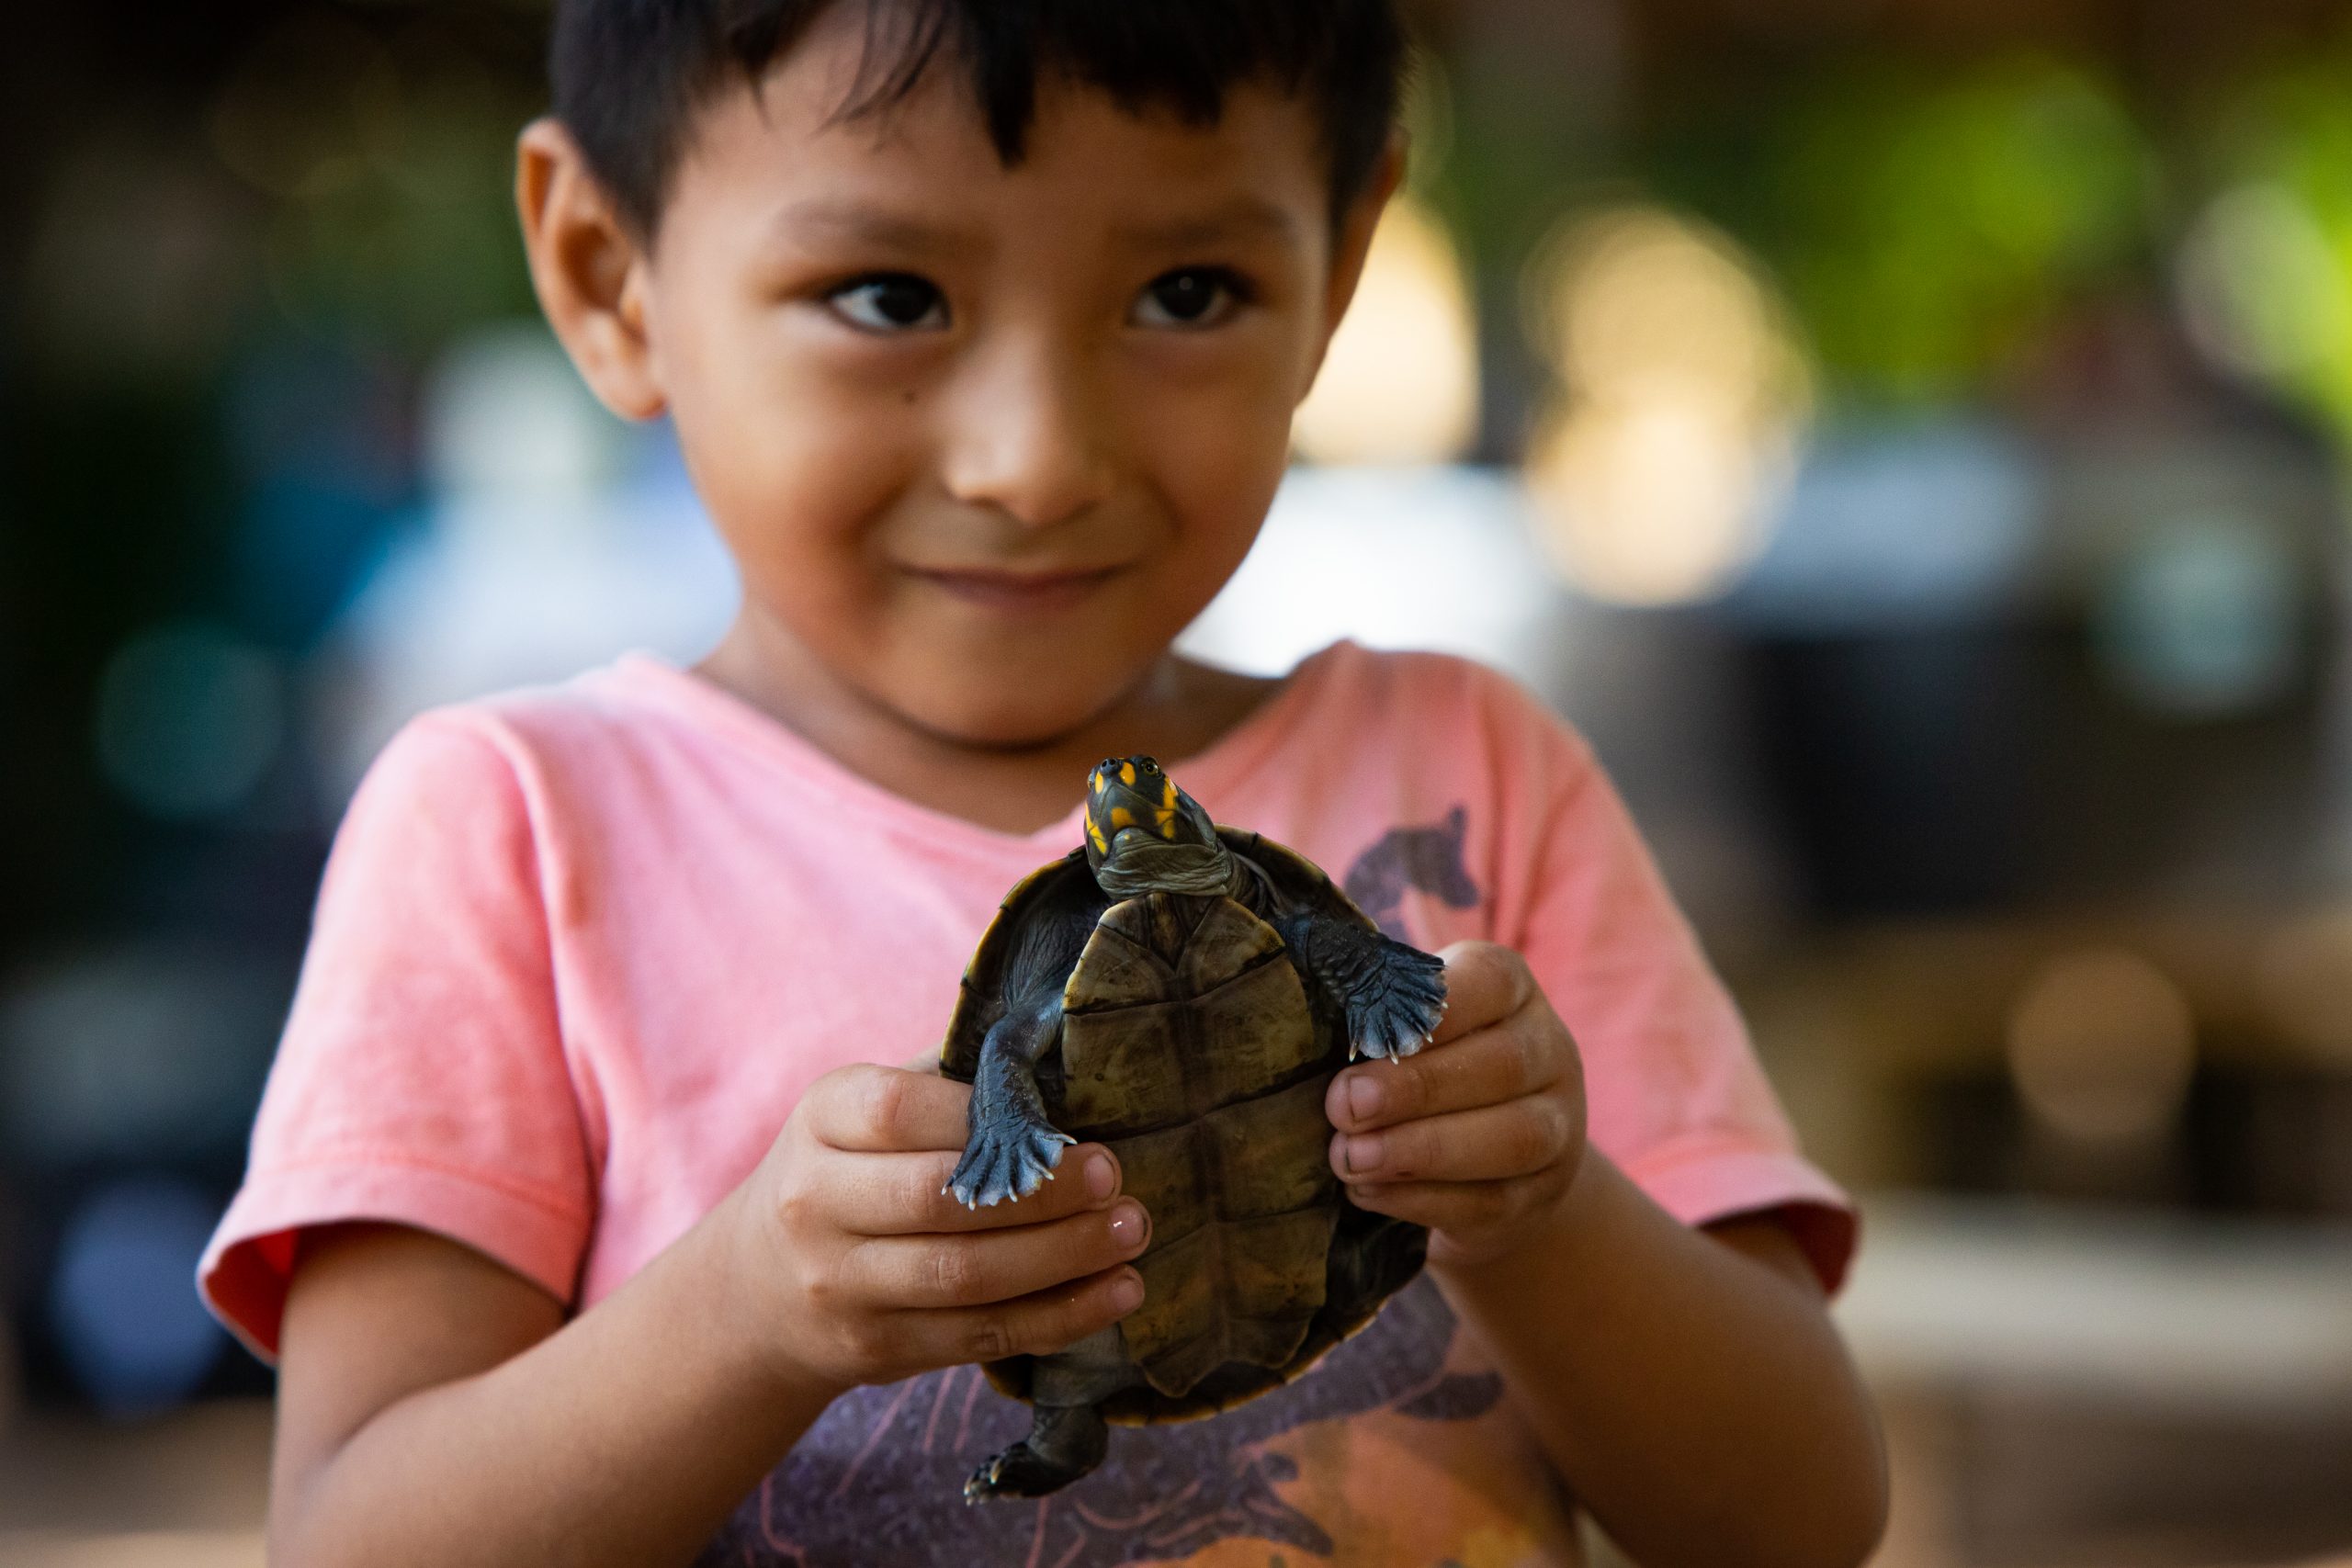 IMG 4377 scaled - Cerca de 4 mil filhotes de tartarugas amazônicas serão soltos por moradores do Pará neste sábado